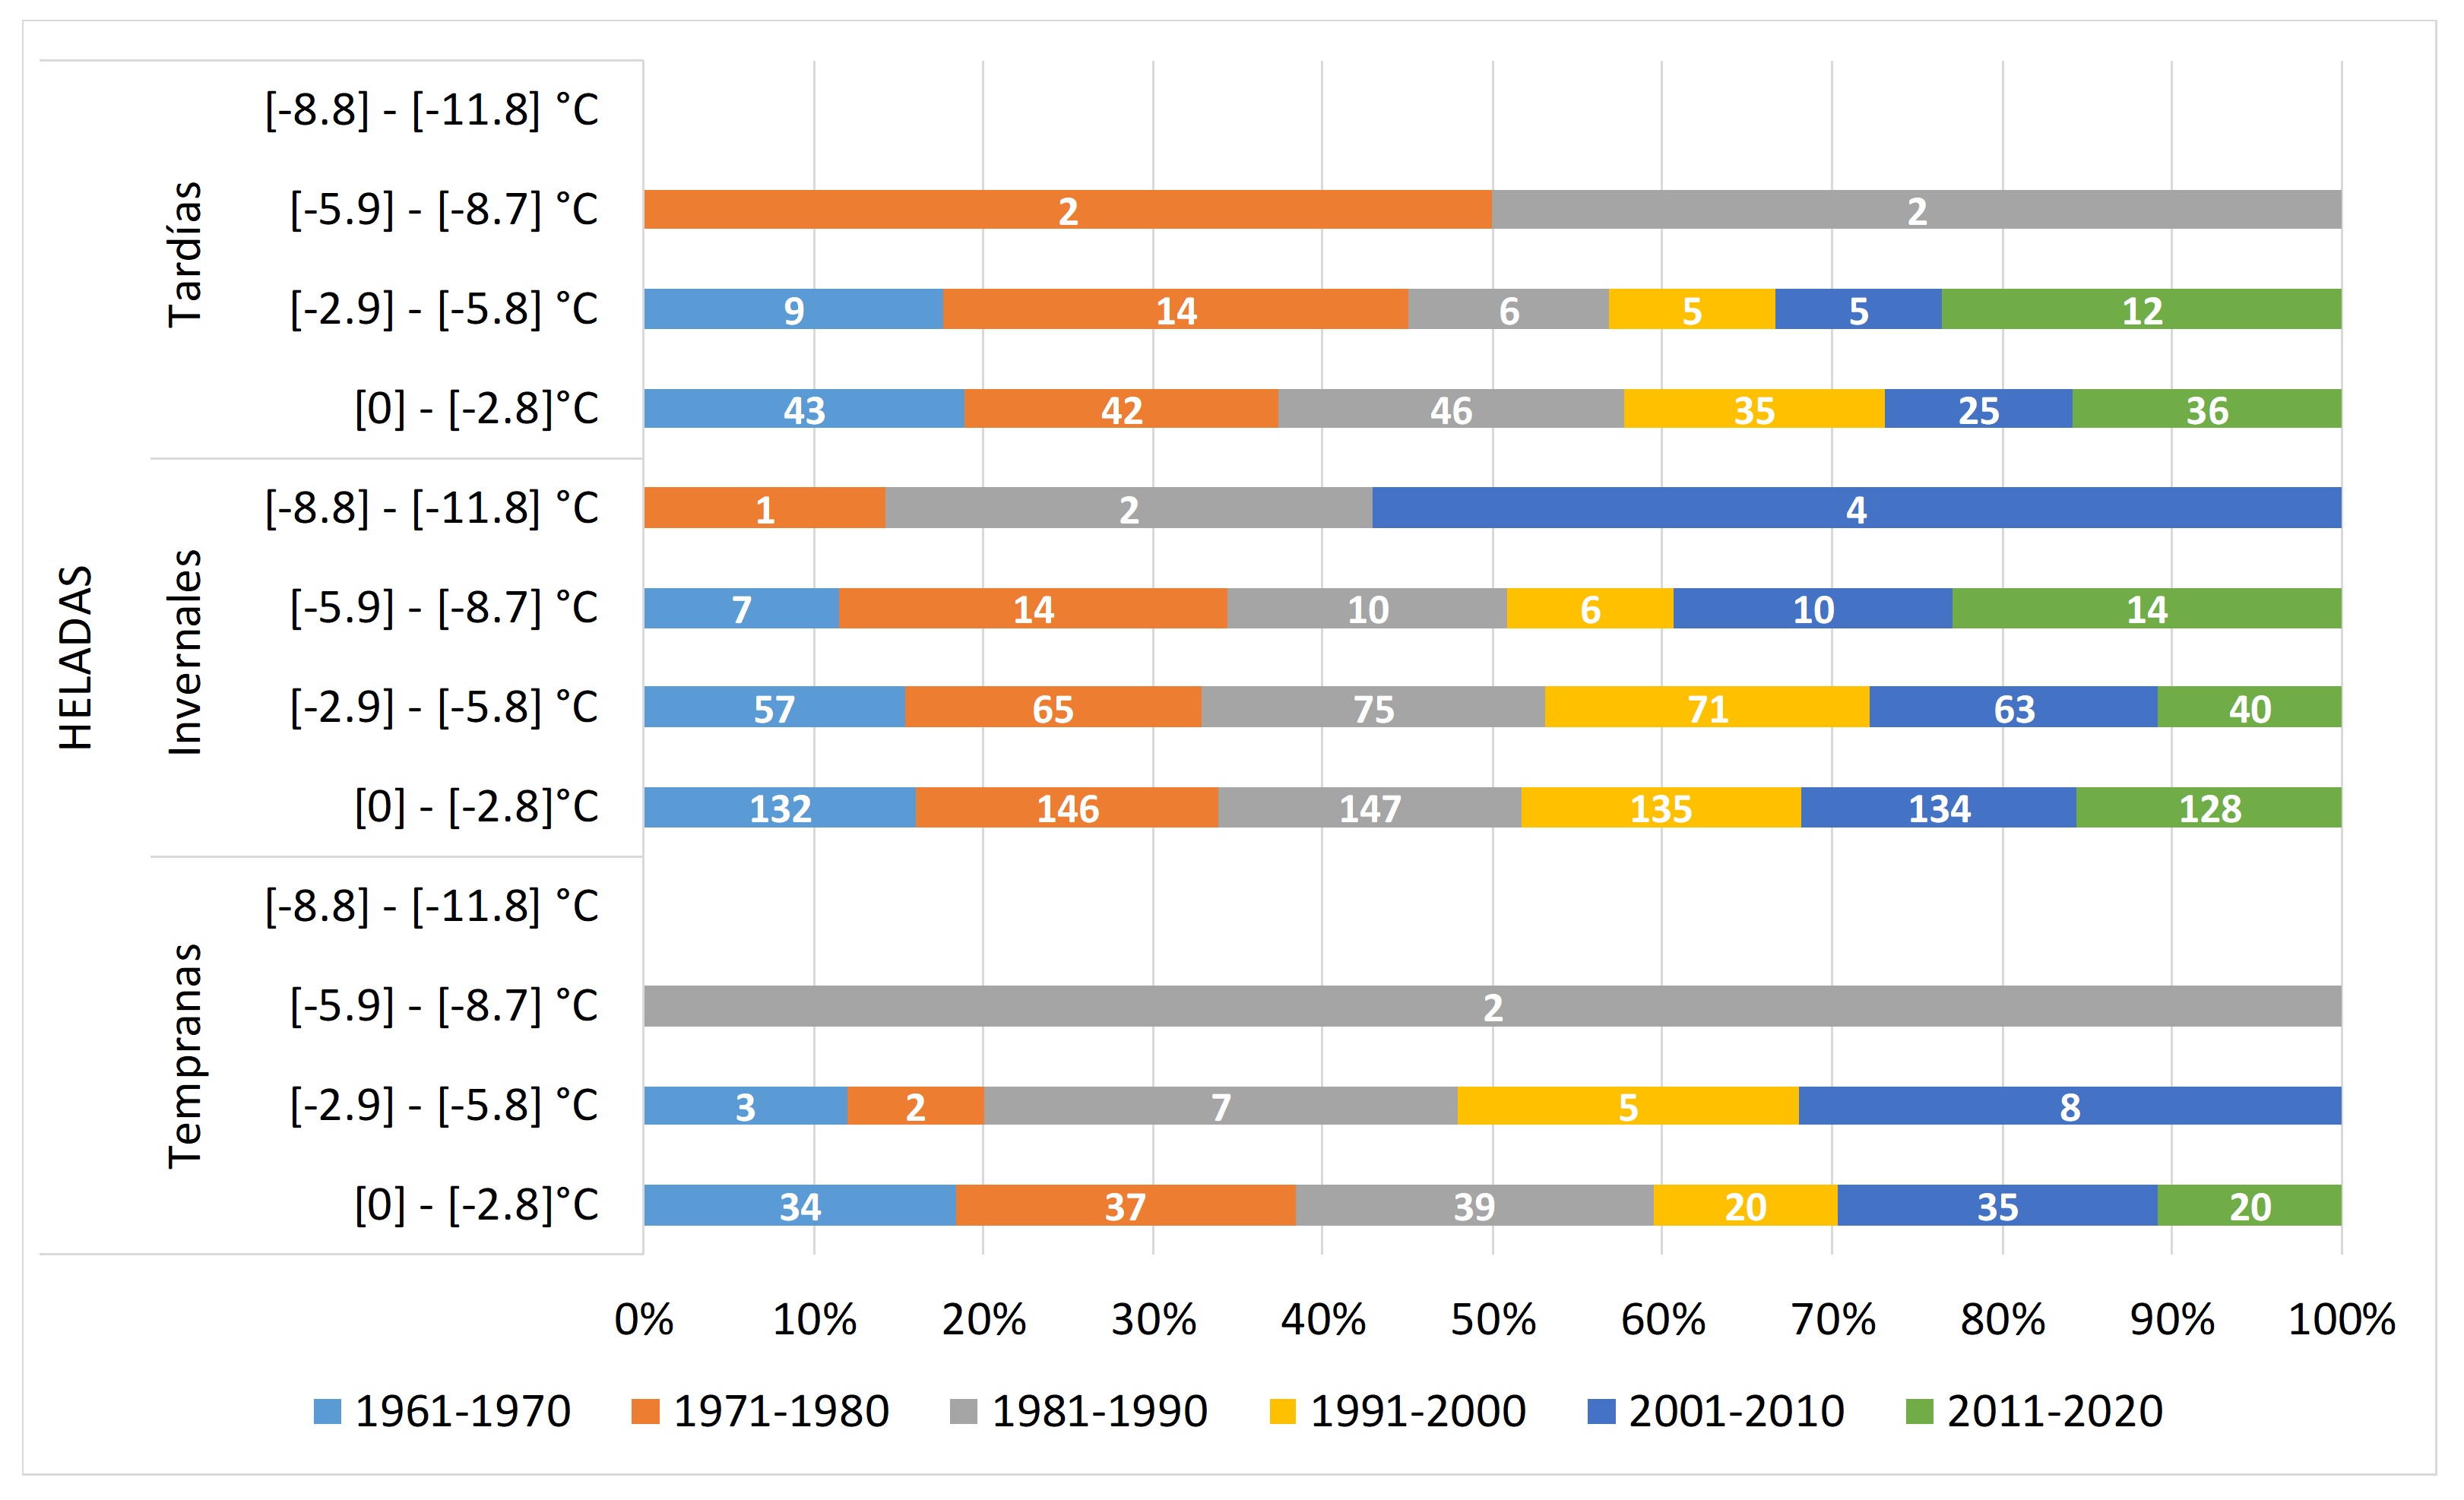 Frecuencia absoluta de intensidad de FD0 tempranas,
invernales y tardías según categorías para el período 1961-2020 en Bahía Blanca.